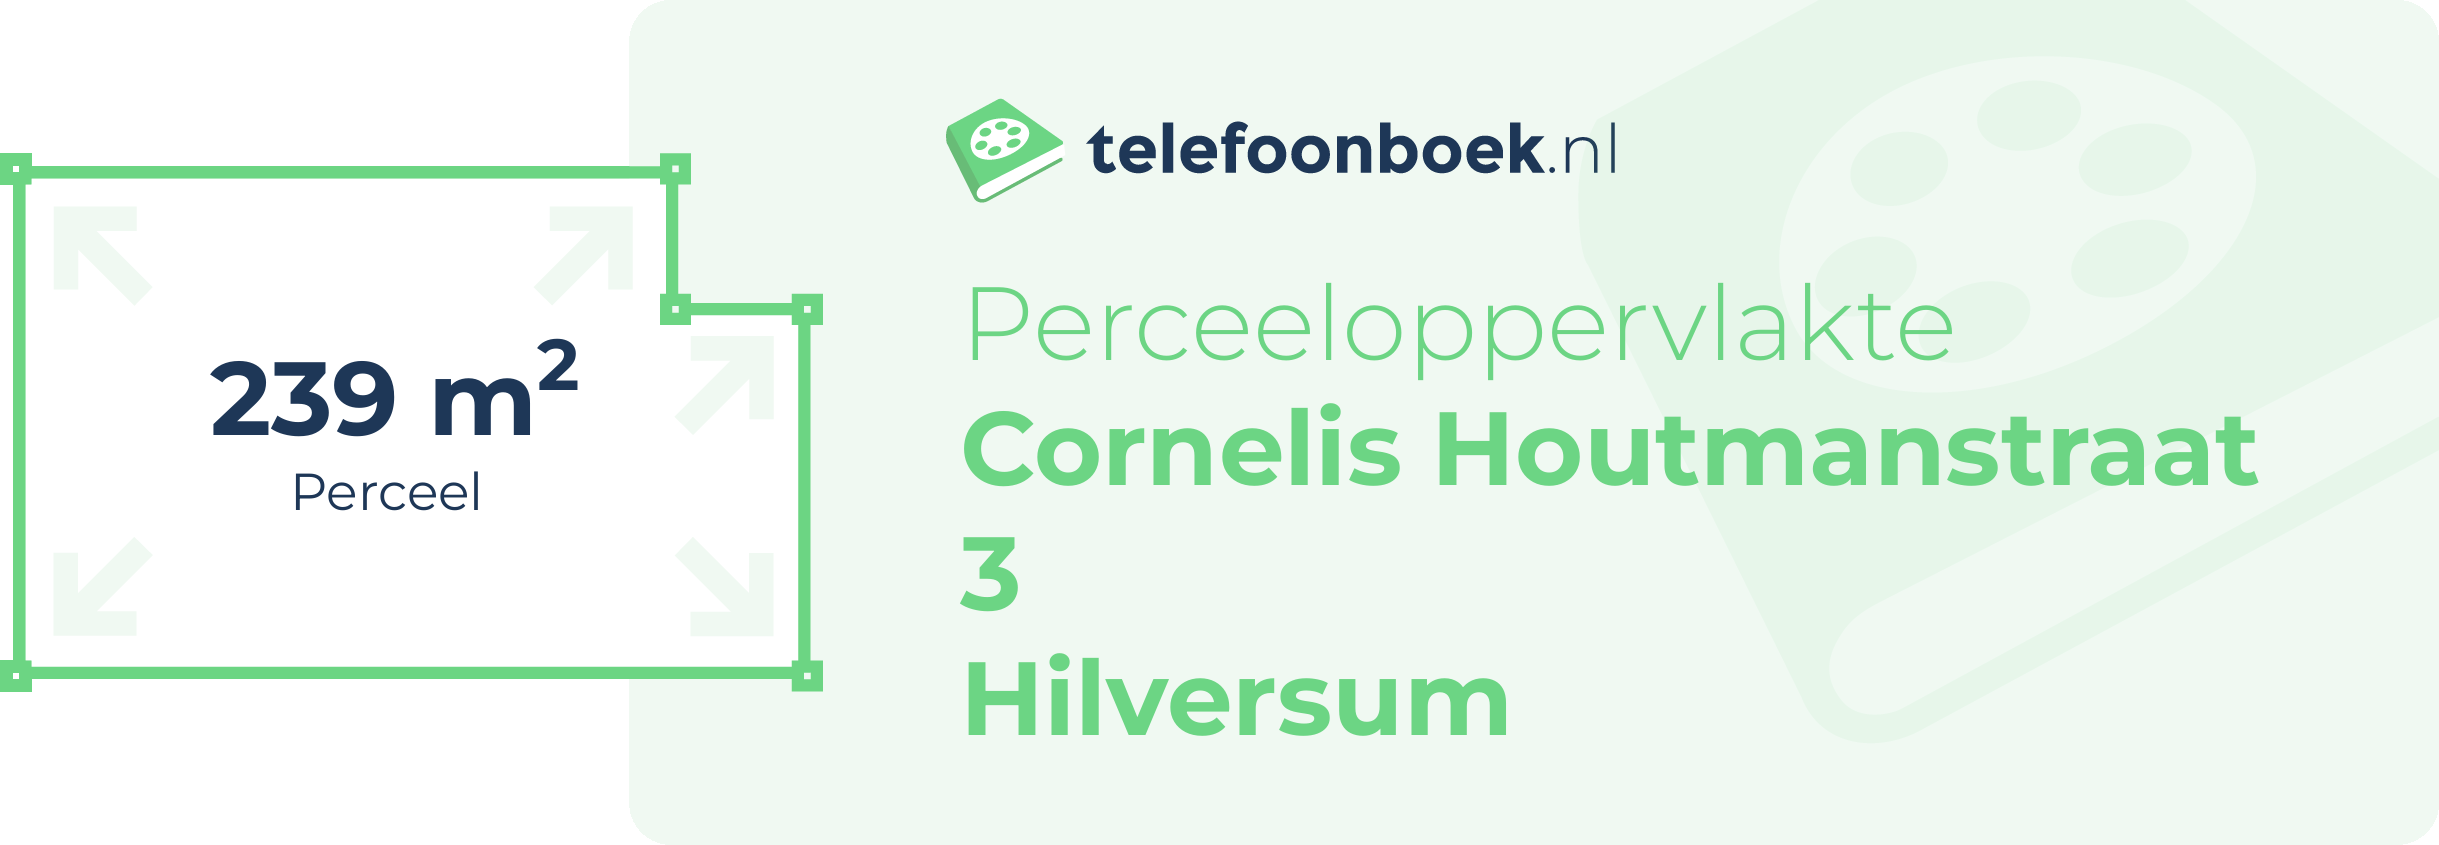 Perceeloppervlakte Cornelis Houtmanstraat 3 Hilversum